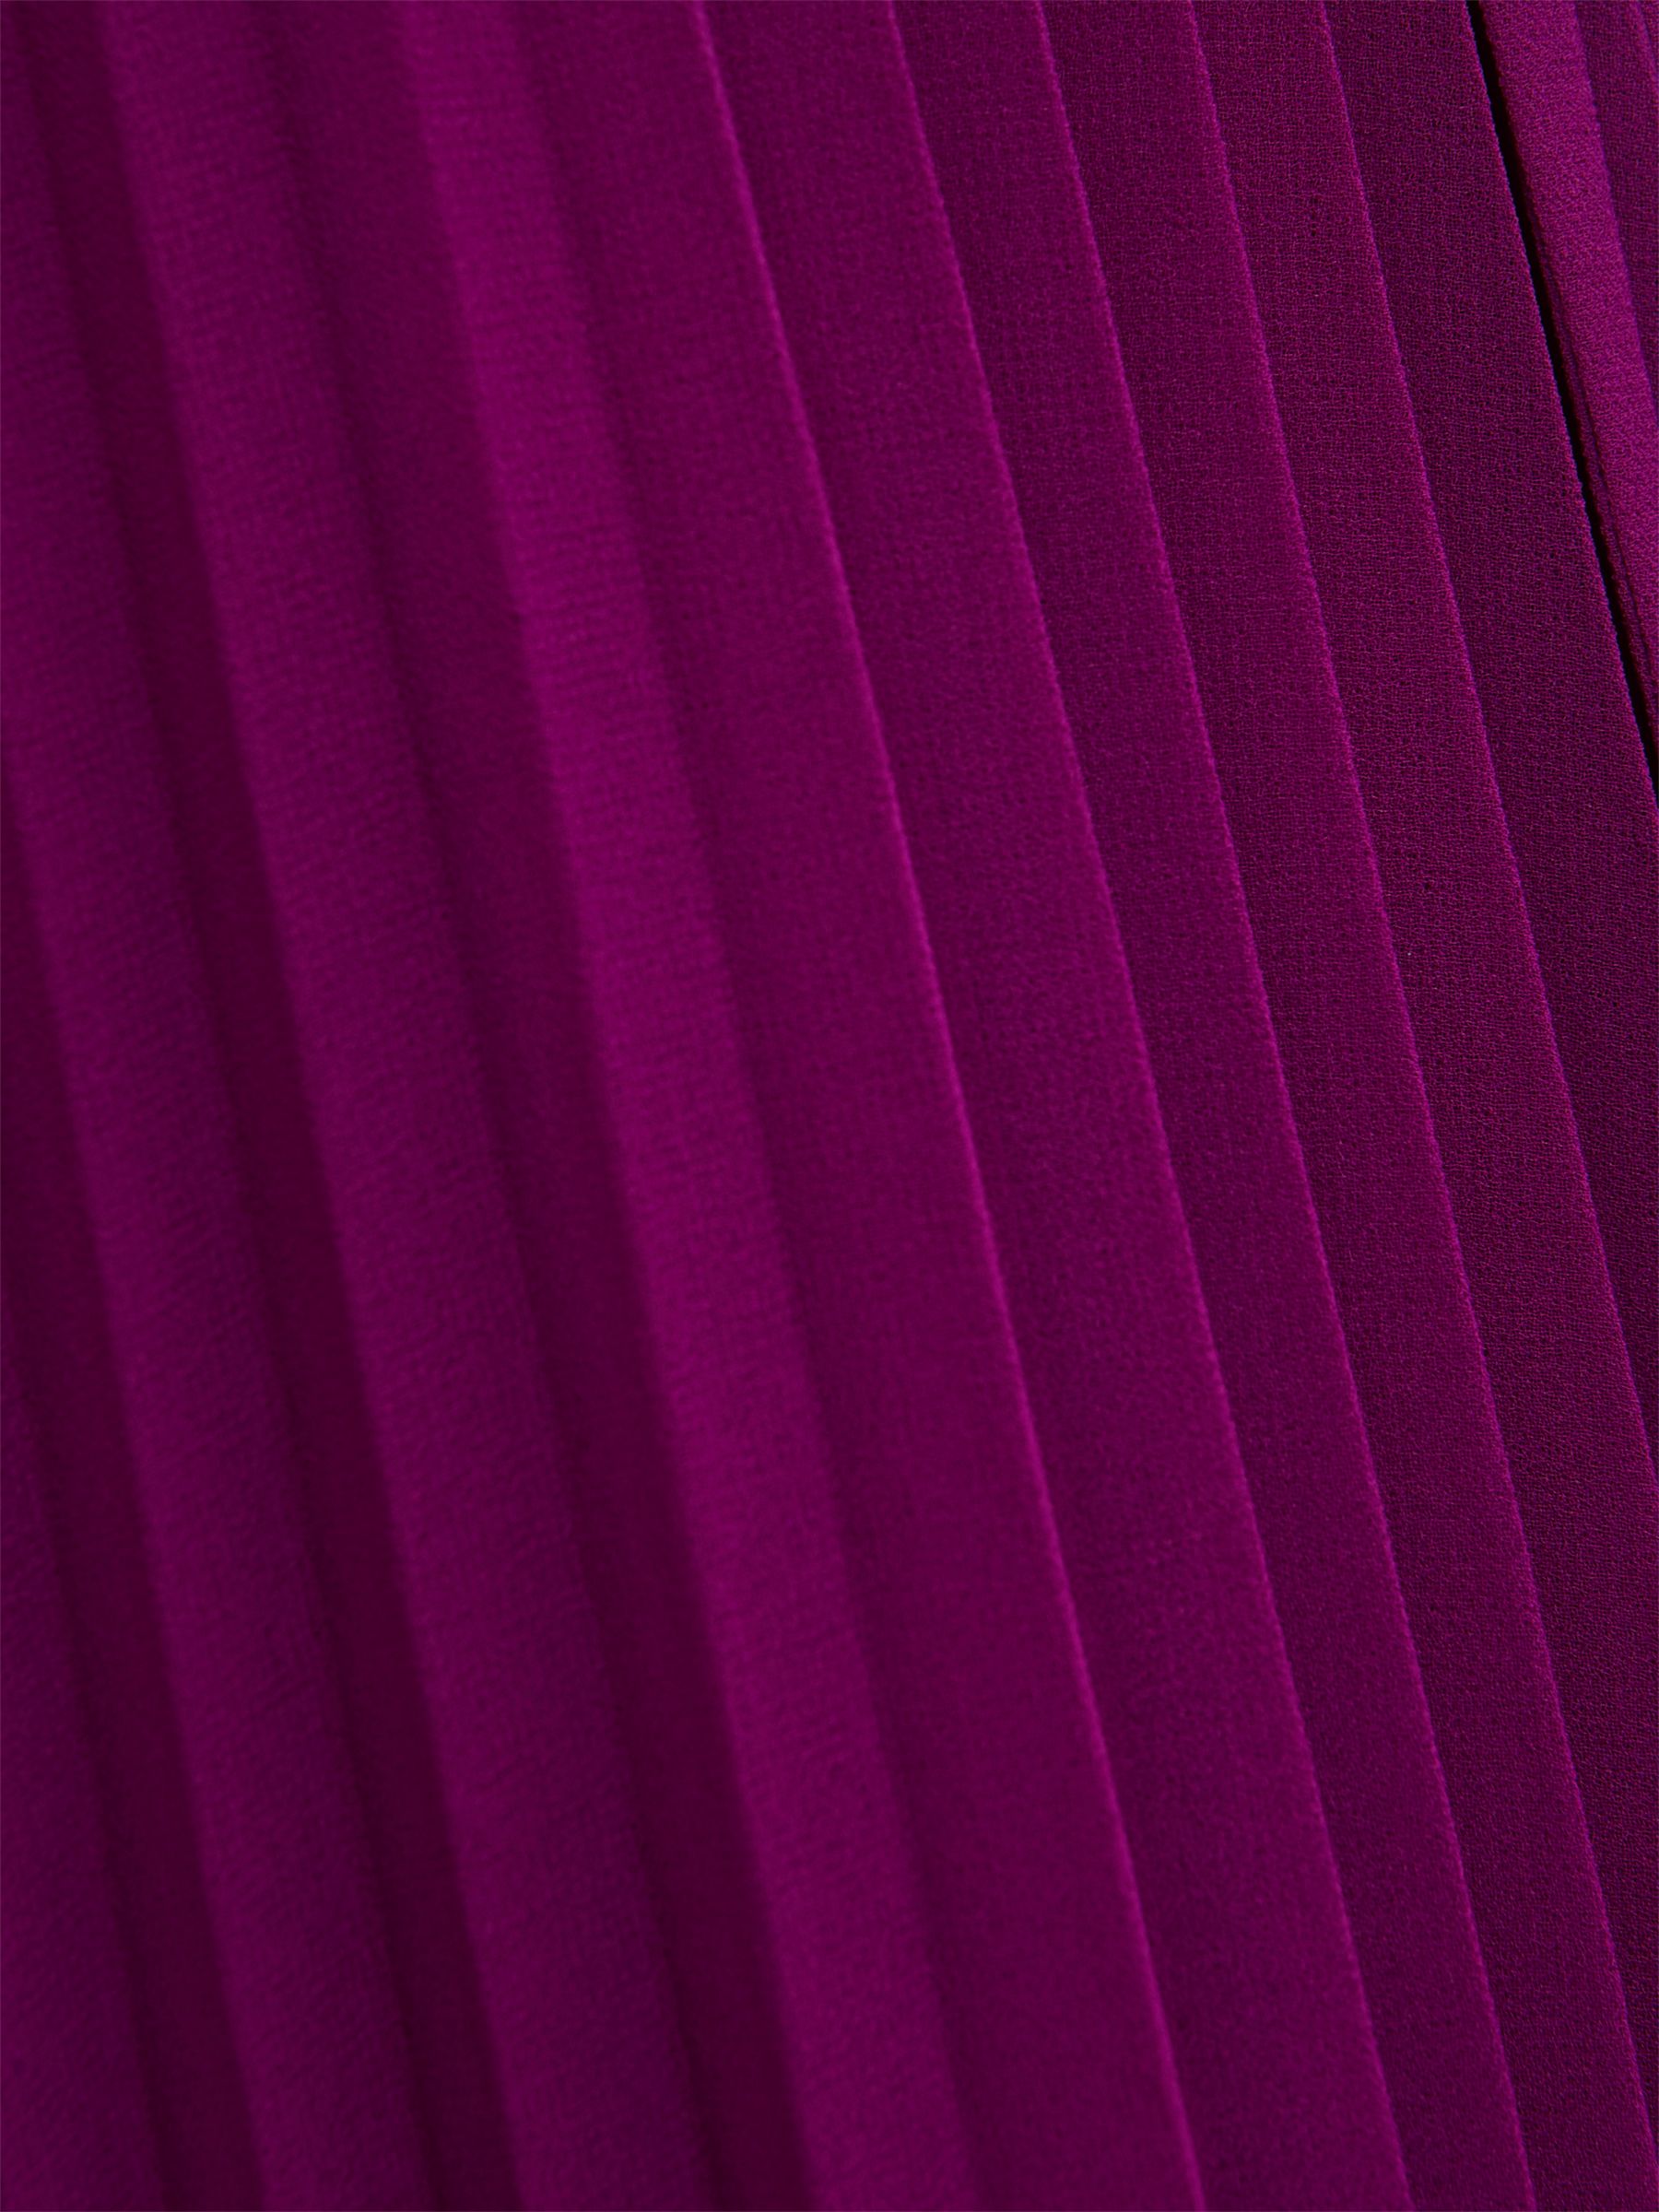 Hobbs Addison Pleated Midi Dress, Magenta Purple, 12